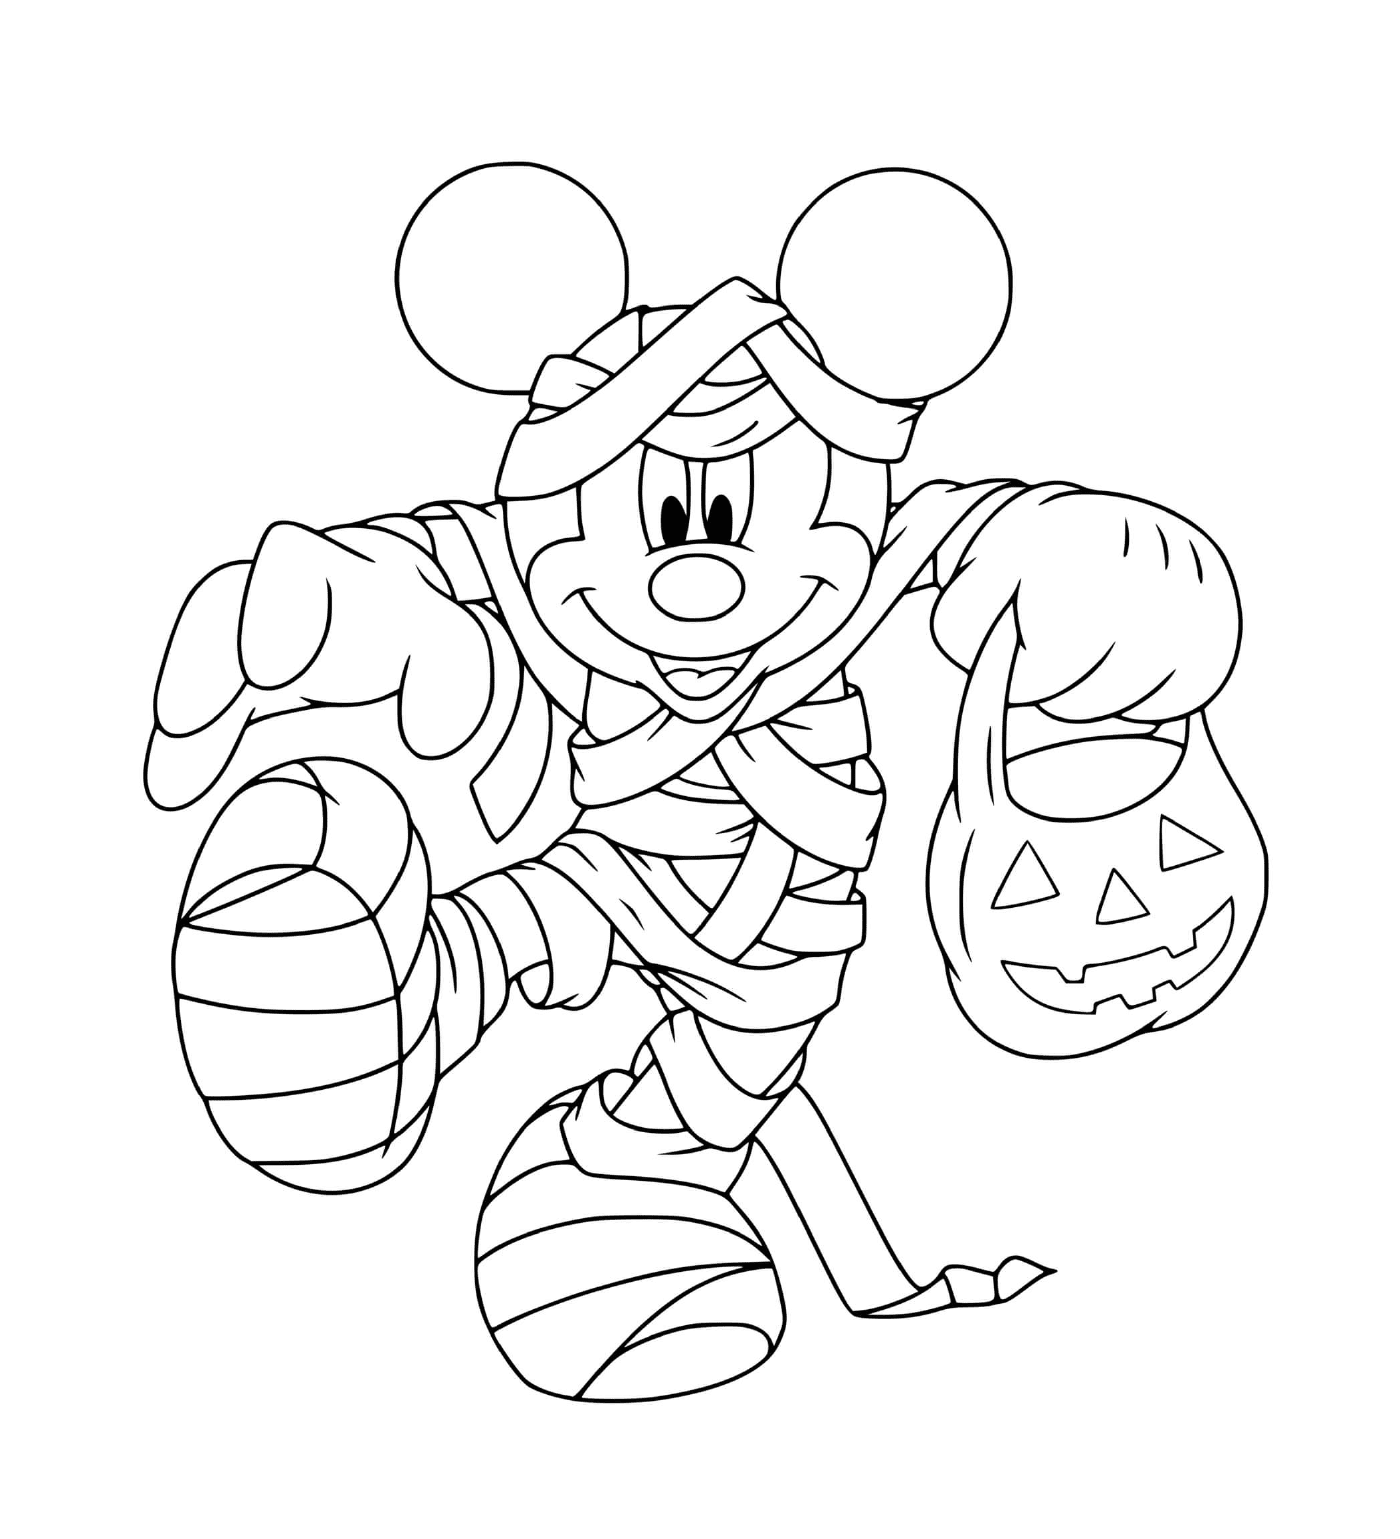  Mickey Maus im gruseligen Kostüm 